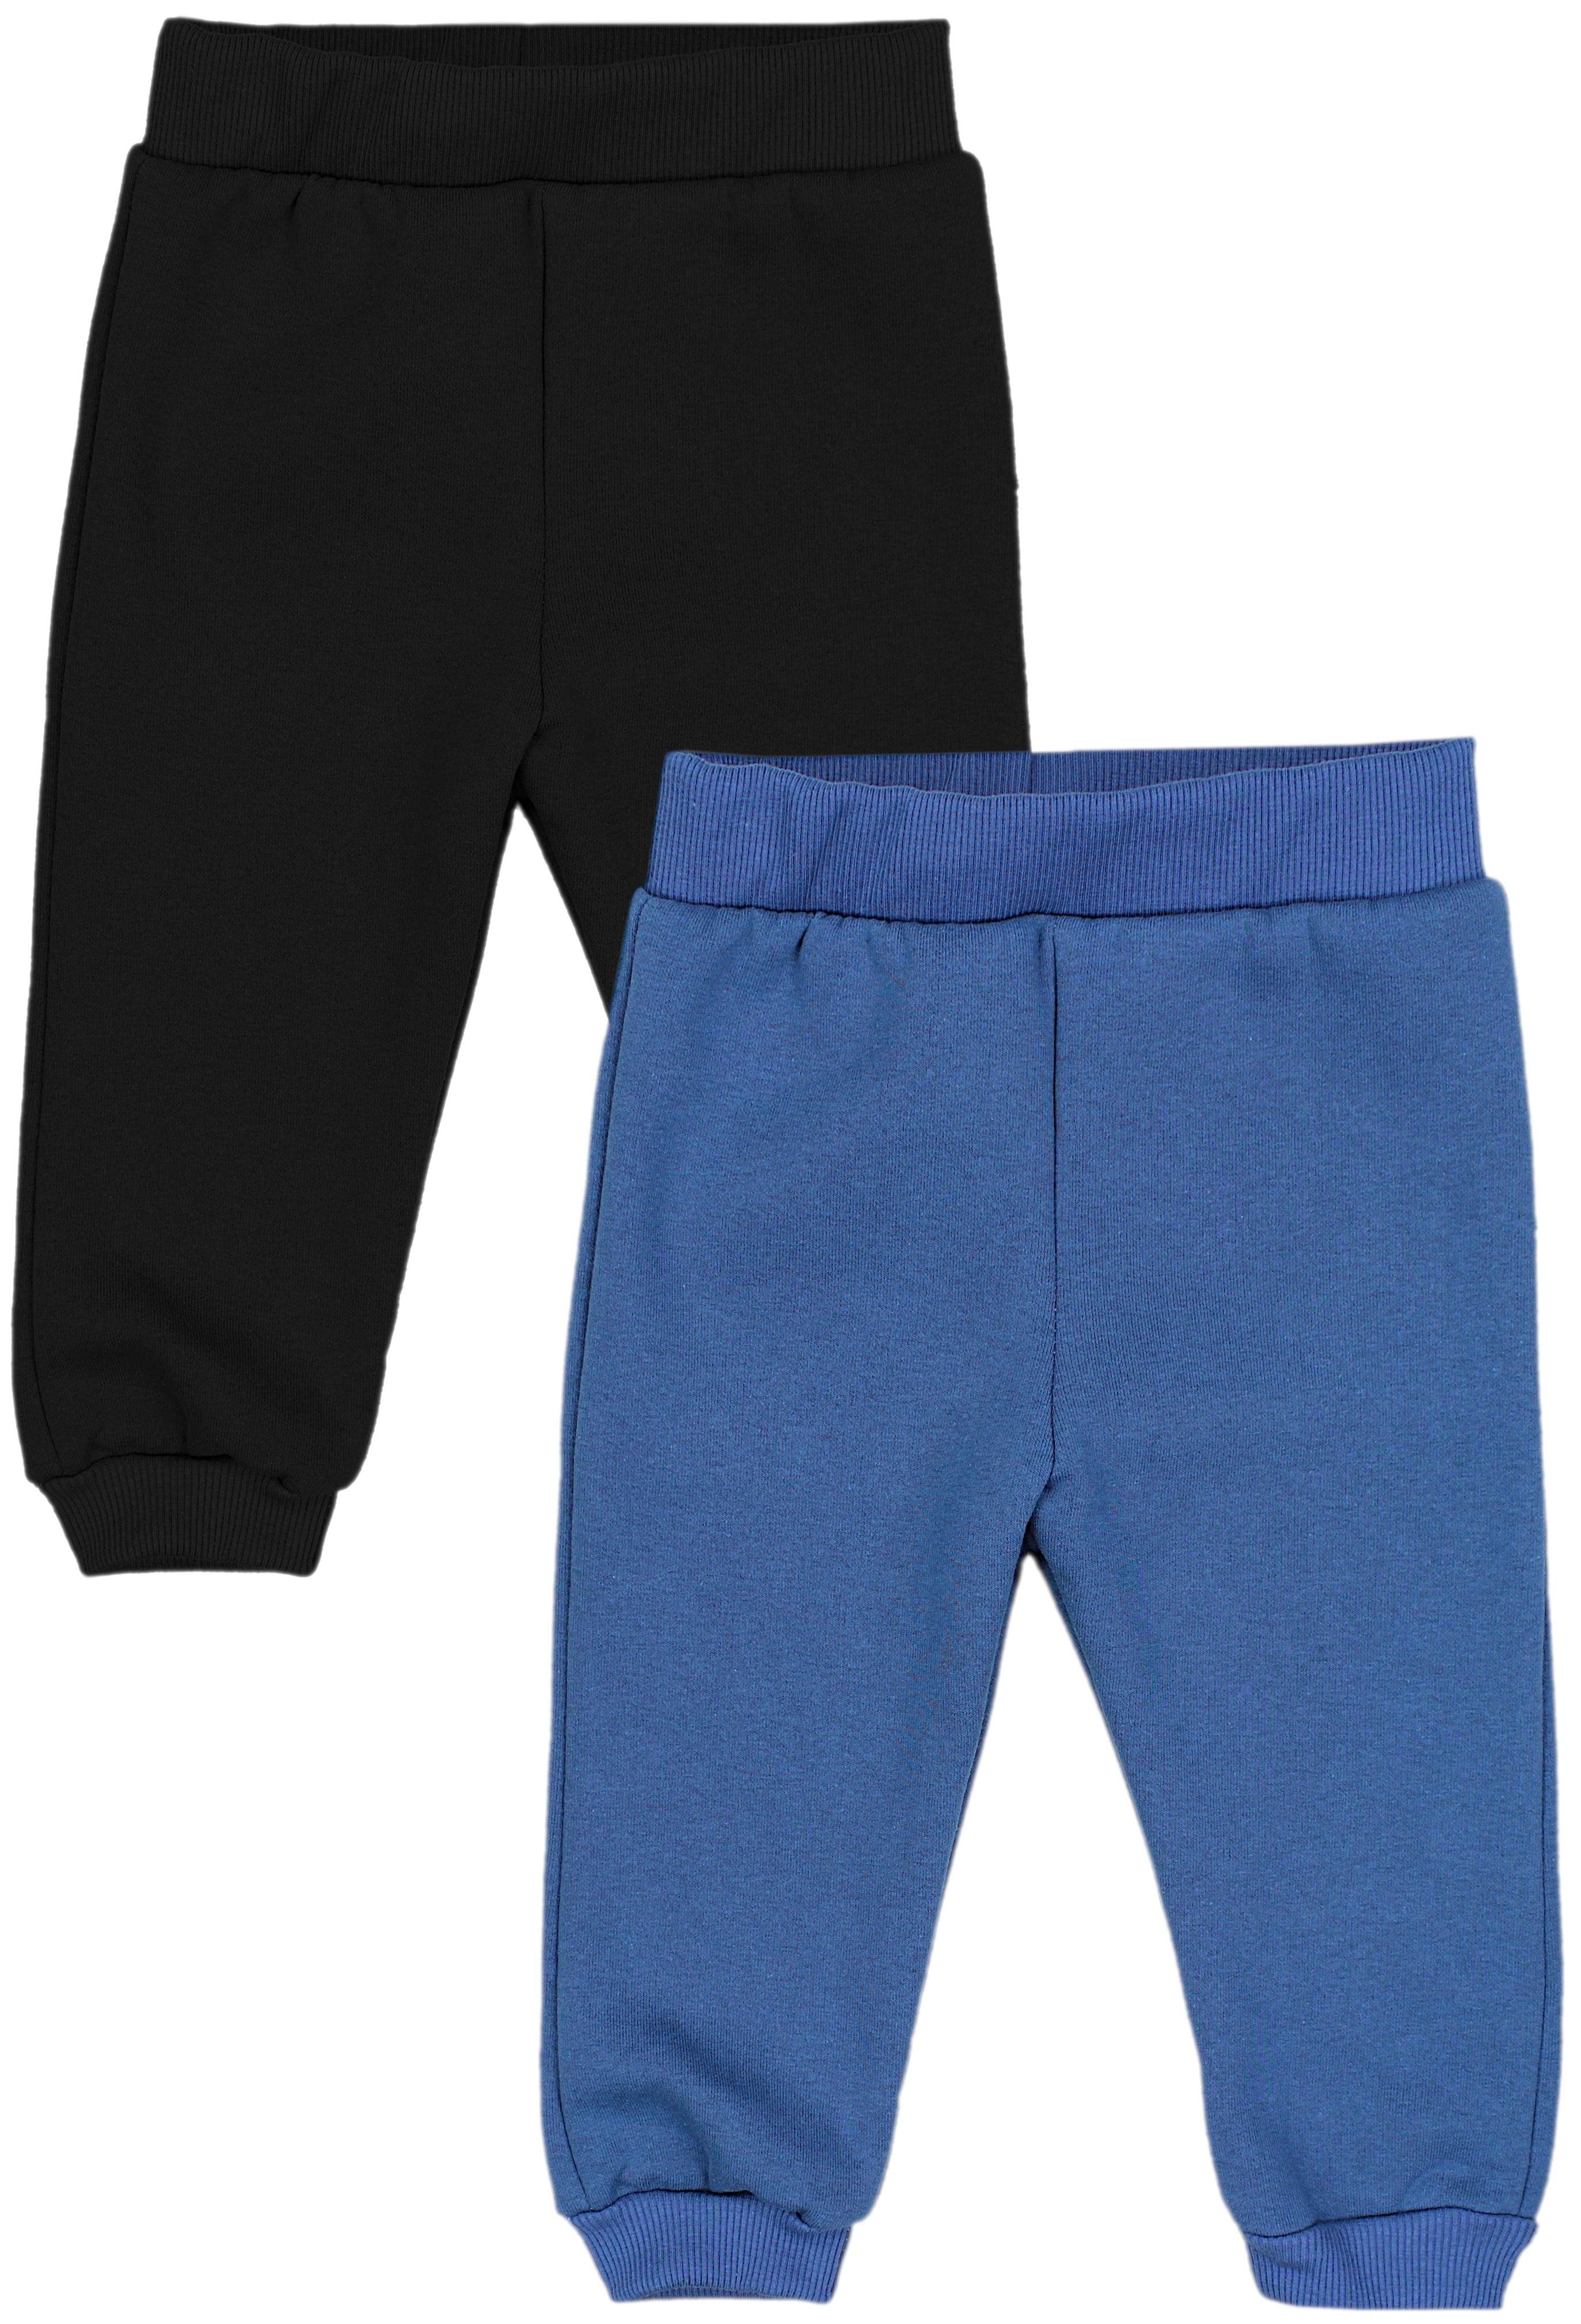 TupTam Fleecehose / Joggingshose Baby Warm Hosen Jeansblau 2er Schwarz Babyhose Jungen Pack Winter